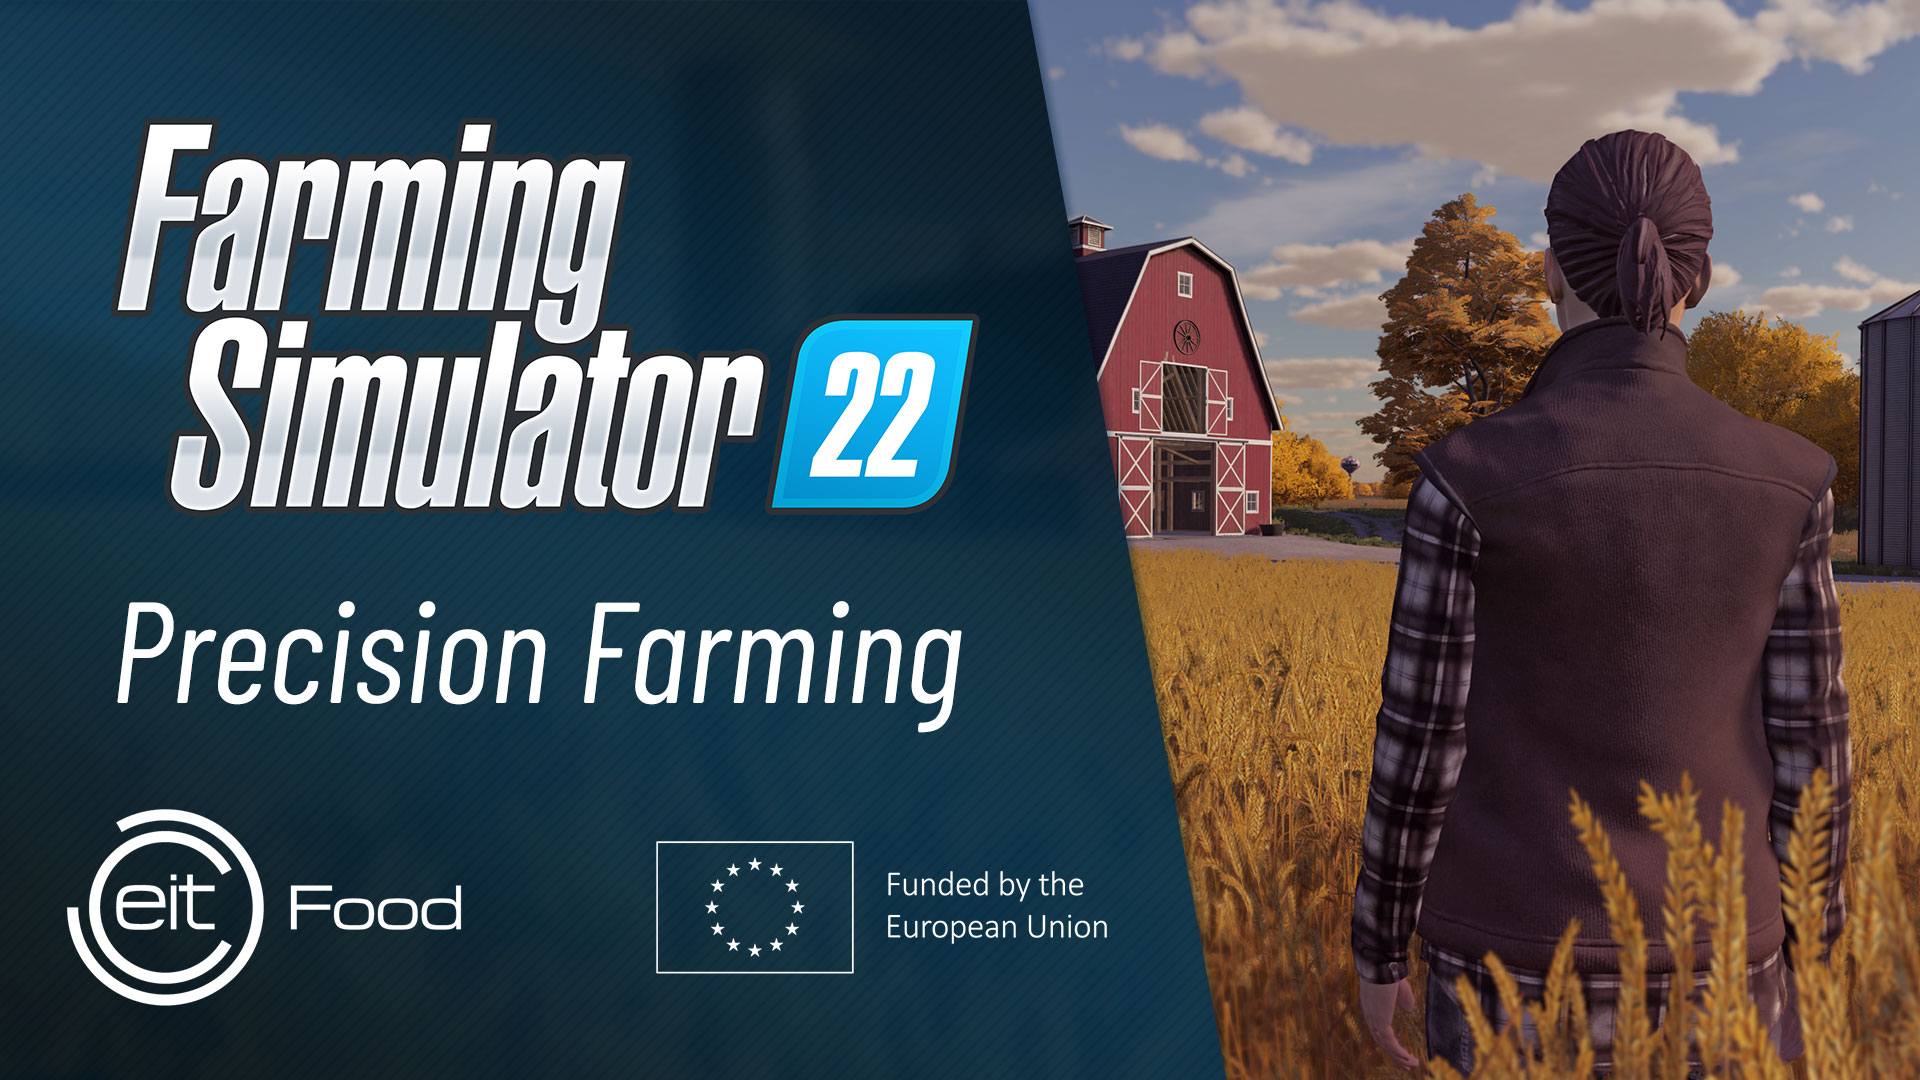 Grenzenloses Farmvergnügen: Landwirtschafts-Simulator 22 unterstützt  Cross-Platform-Multiplayer